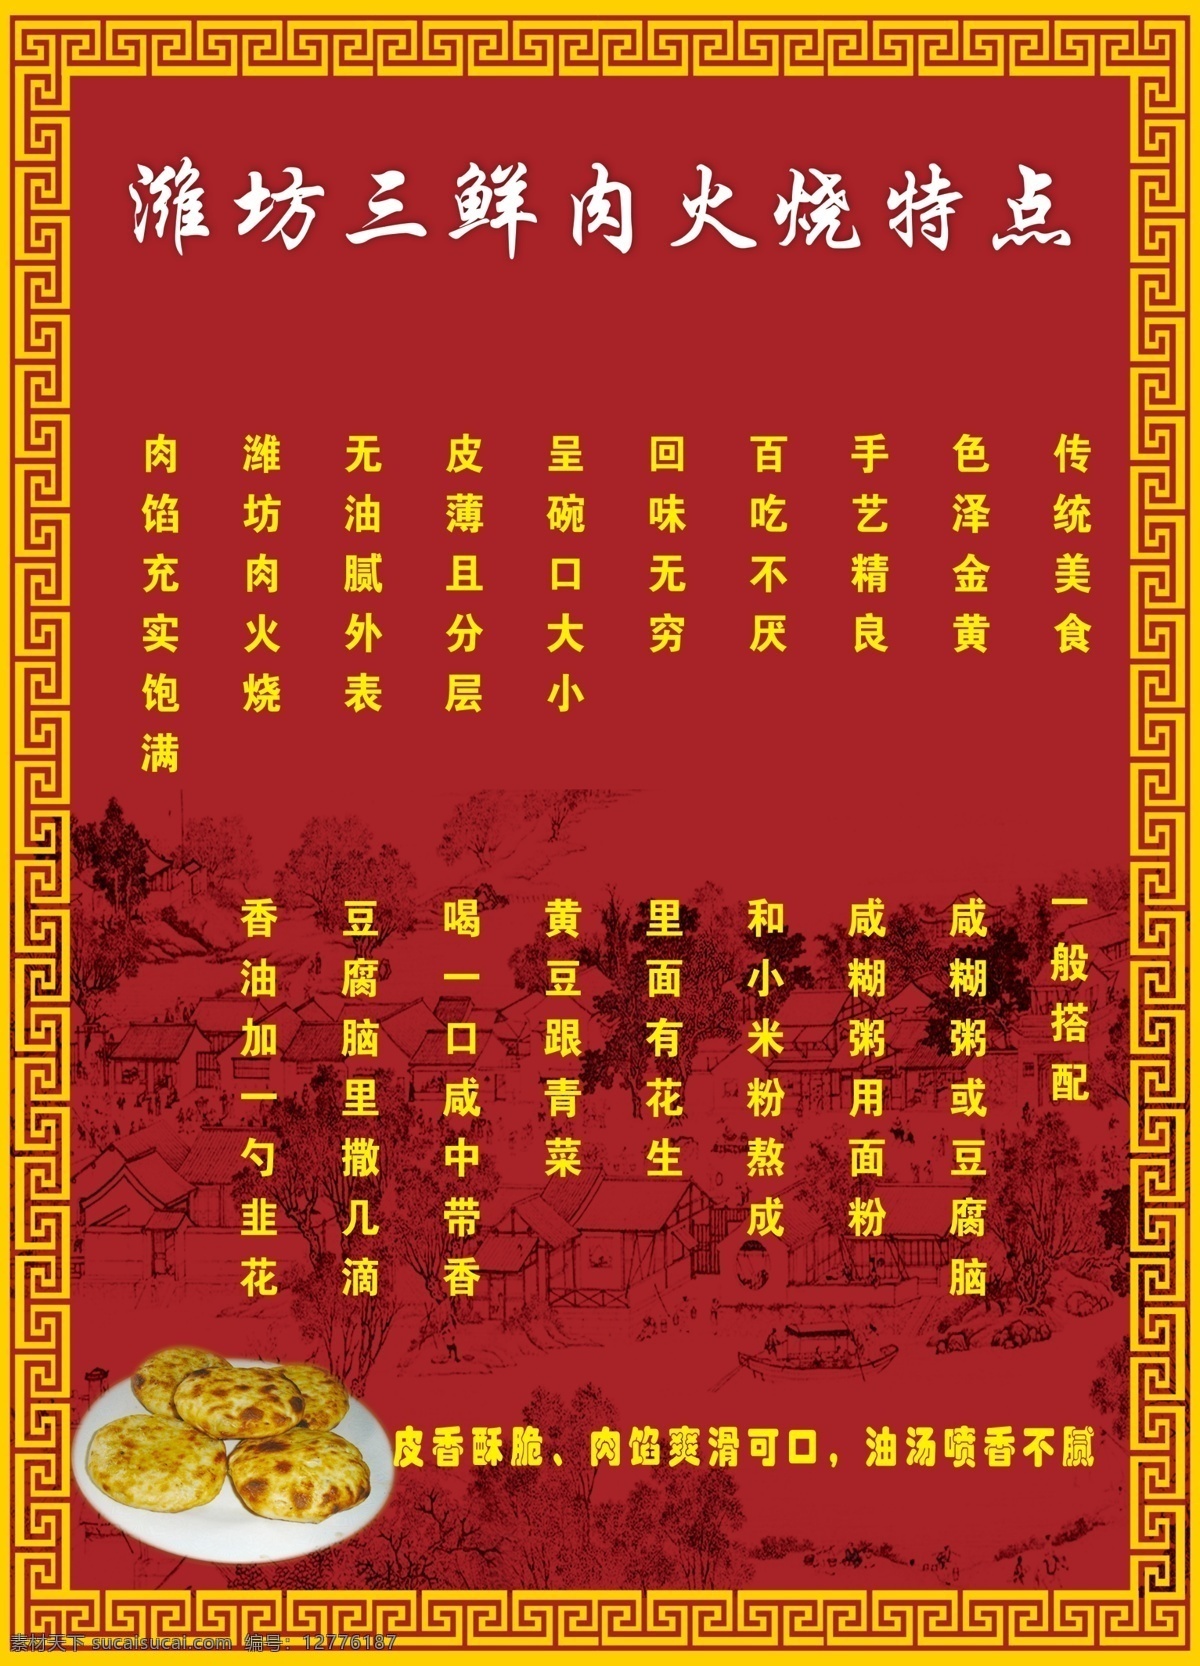 潍坊肉火烧 特点 海报 名吃 火烧 广告设计模板 源文件